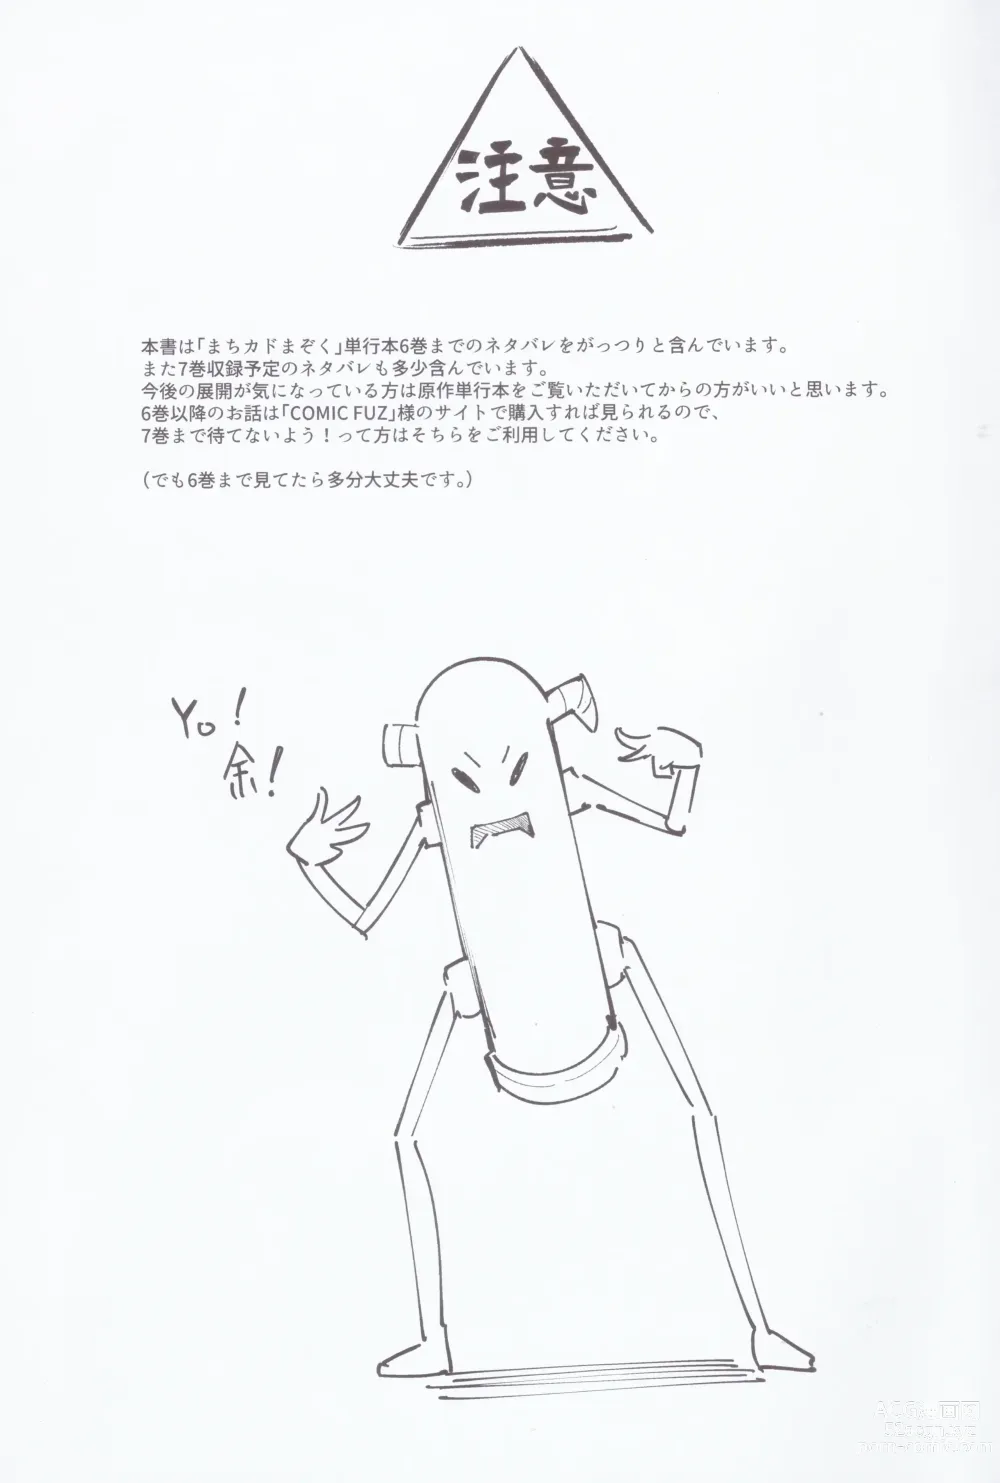 Page 2 of doujinshi Mazoku wa  Shukuteki to  Nakayoshi Shinai to Derarenai Heya ni, Tojikomerarete Shimatta!